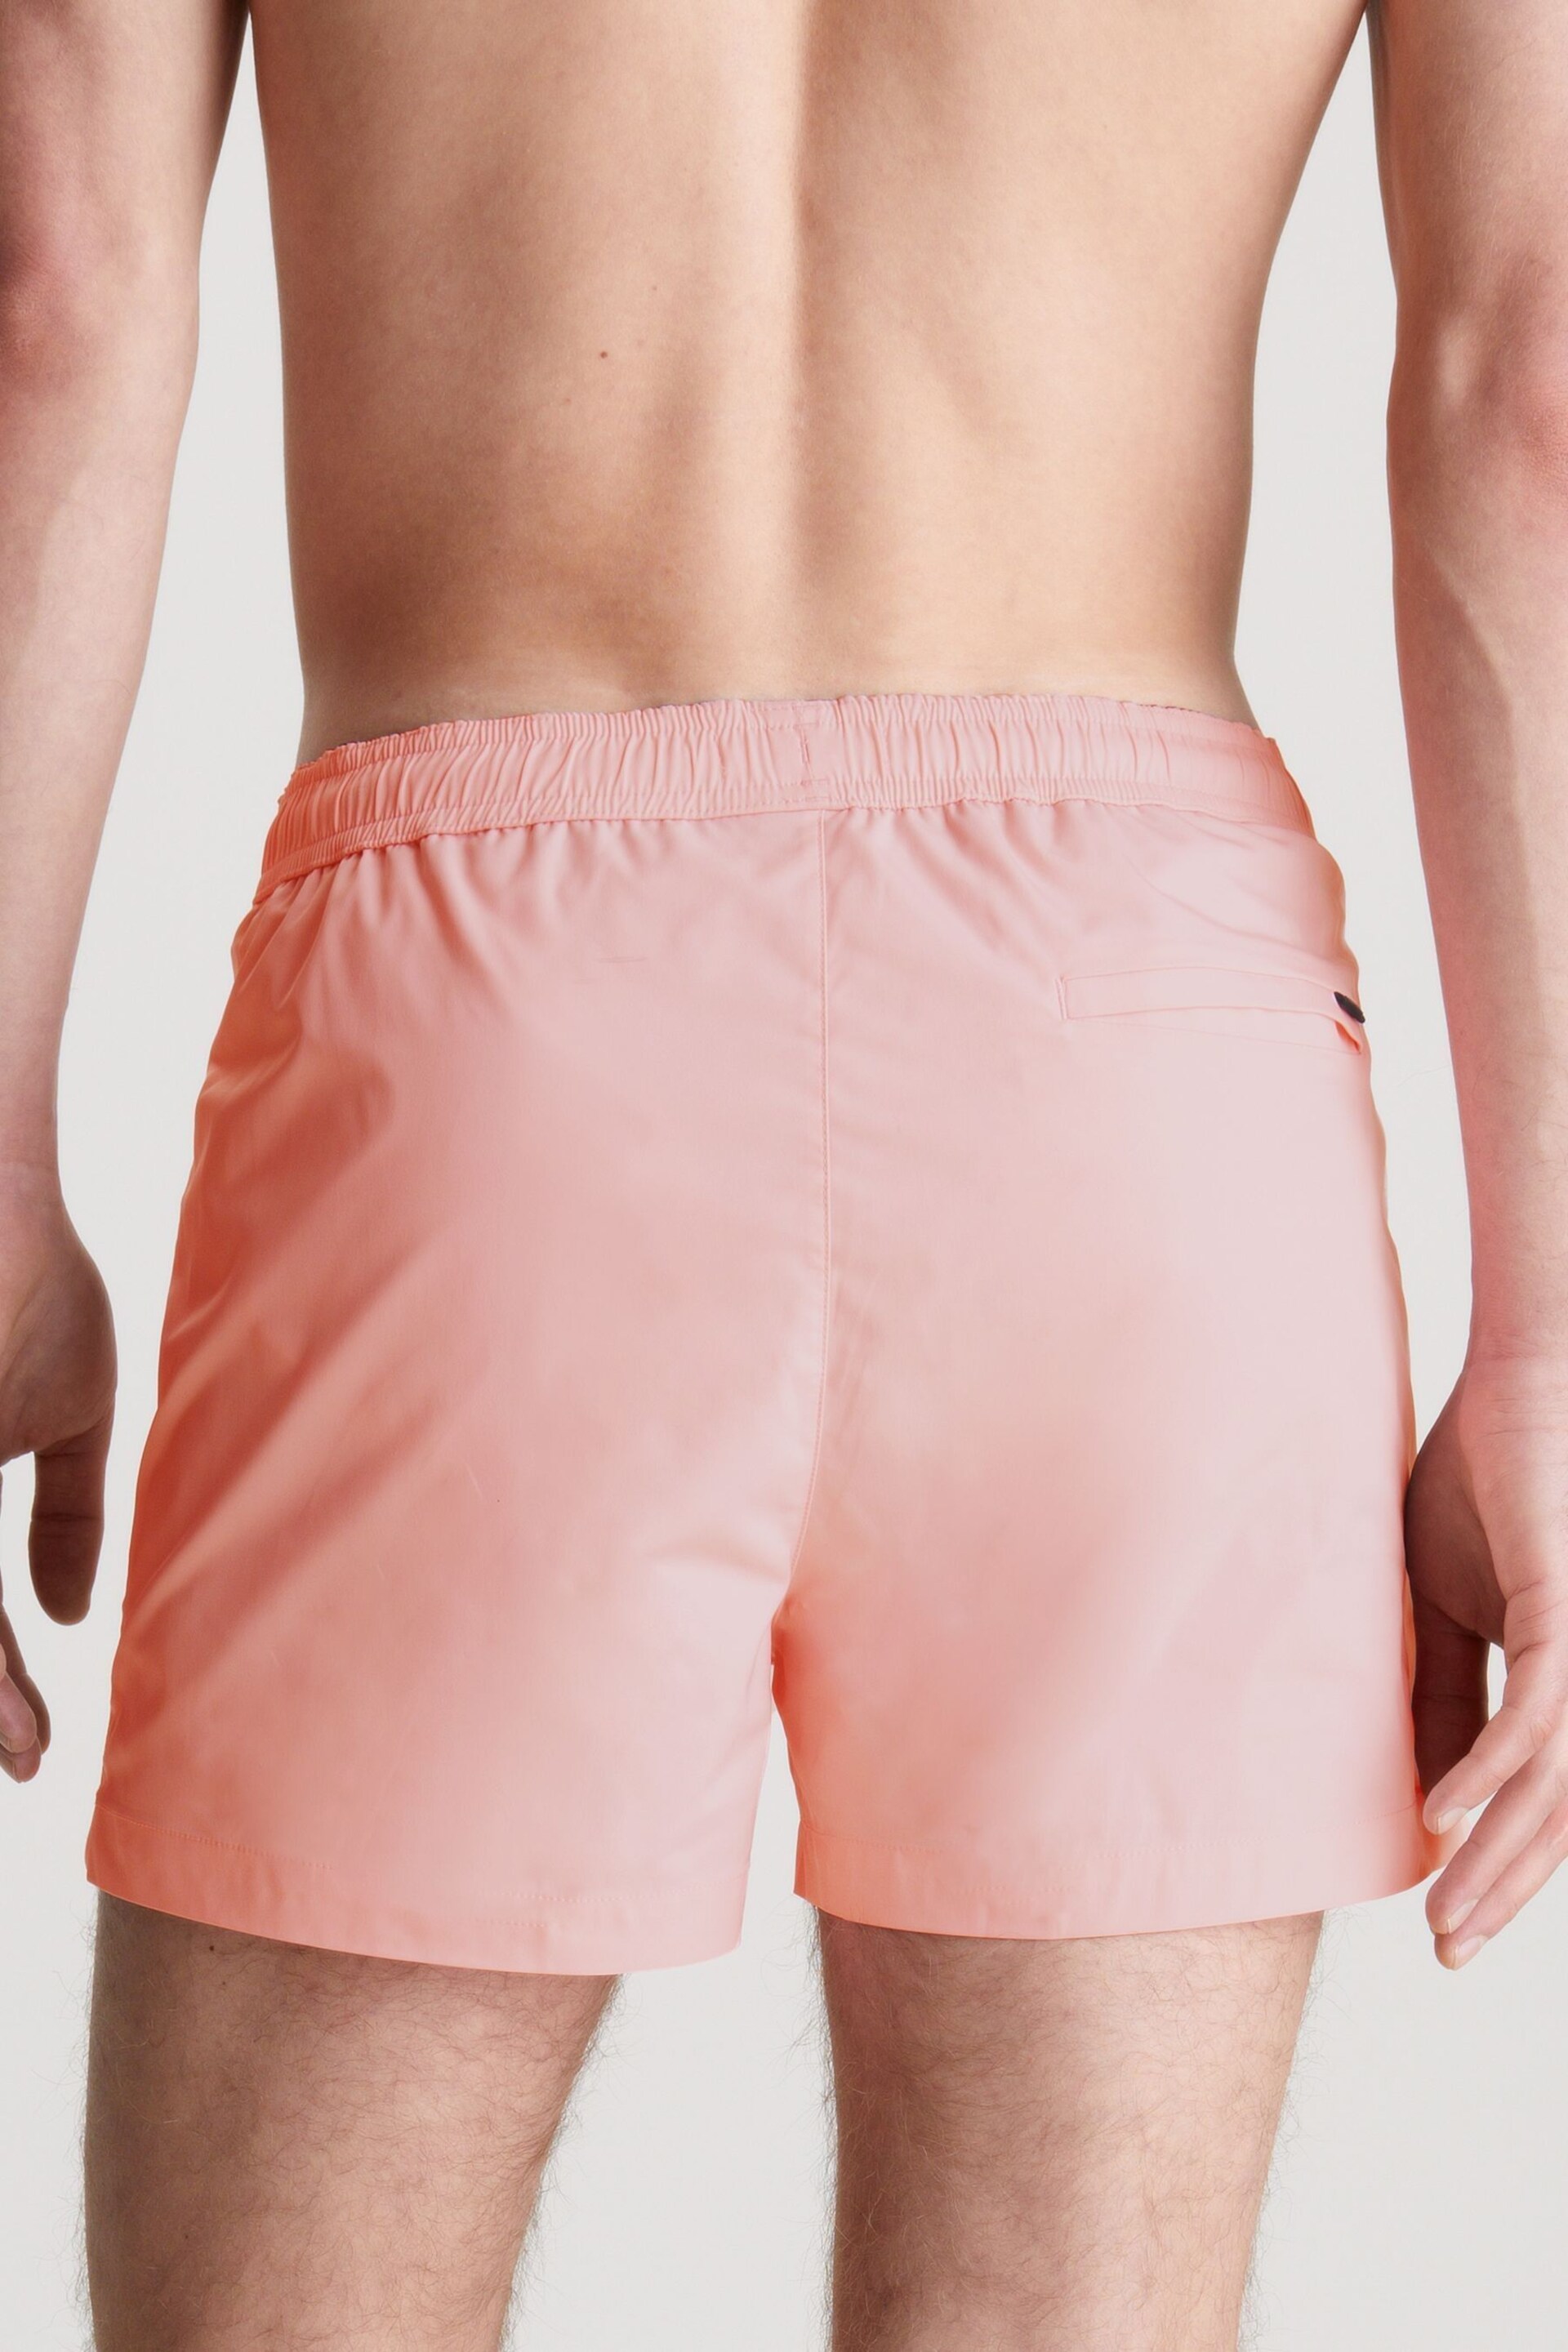 Calvin Klein Pink Plain Swim Shorts - Image 2 of 4